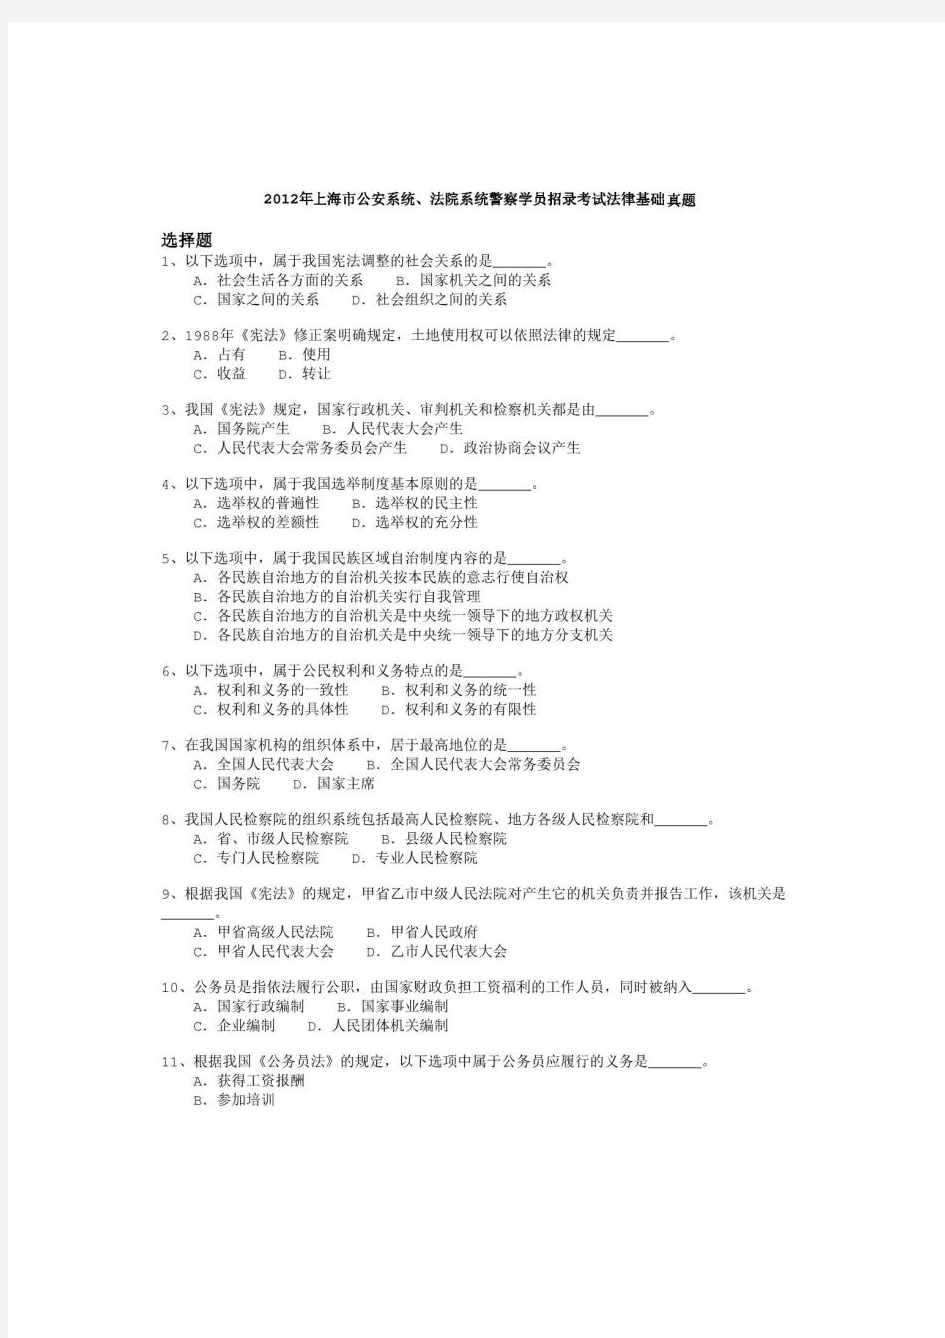 2012年上海市公安系统、法院系统警察学员招录考试《法律基础》真题及详解-b